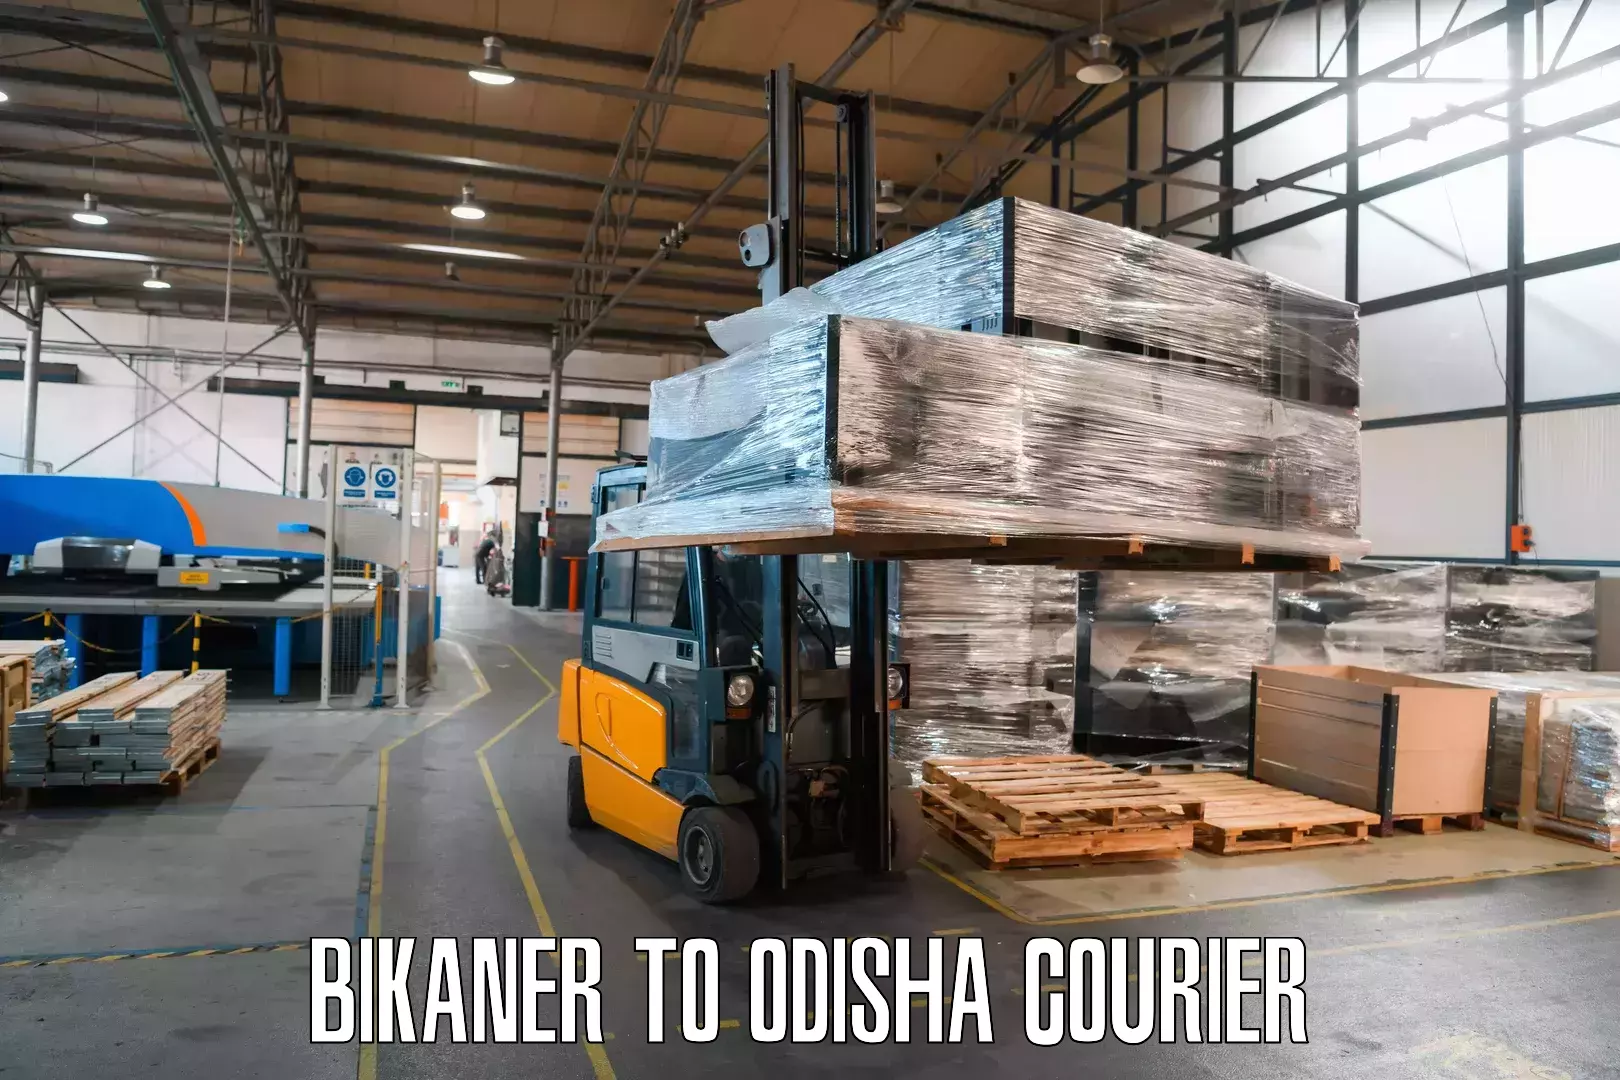 Urban courier service Bikaner to Barbil